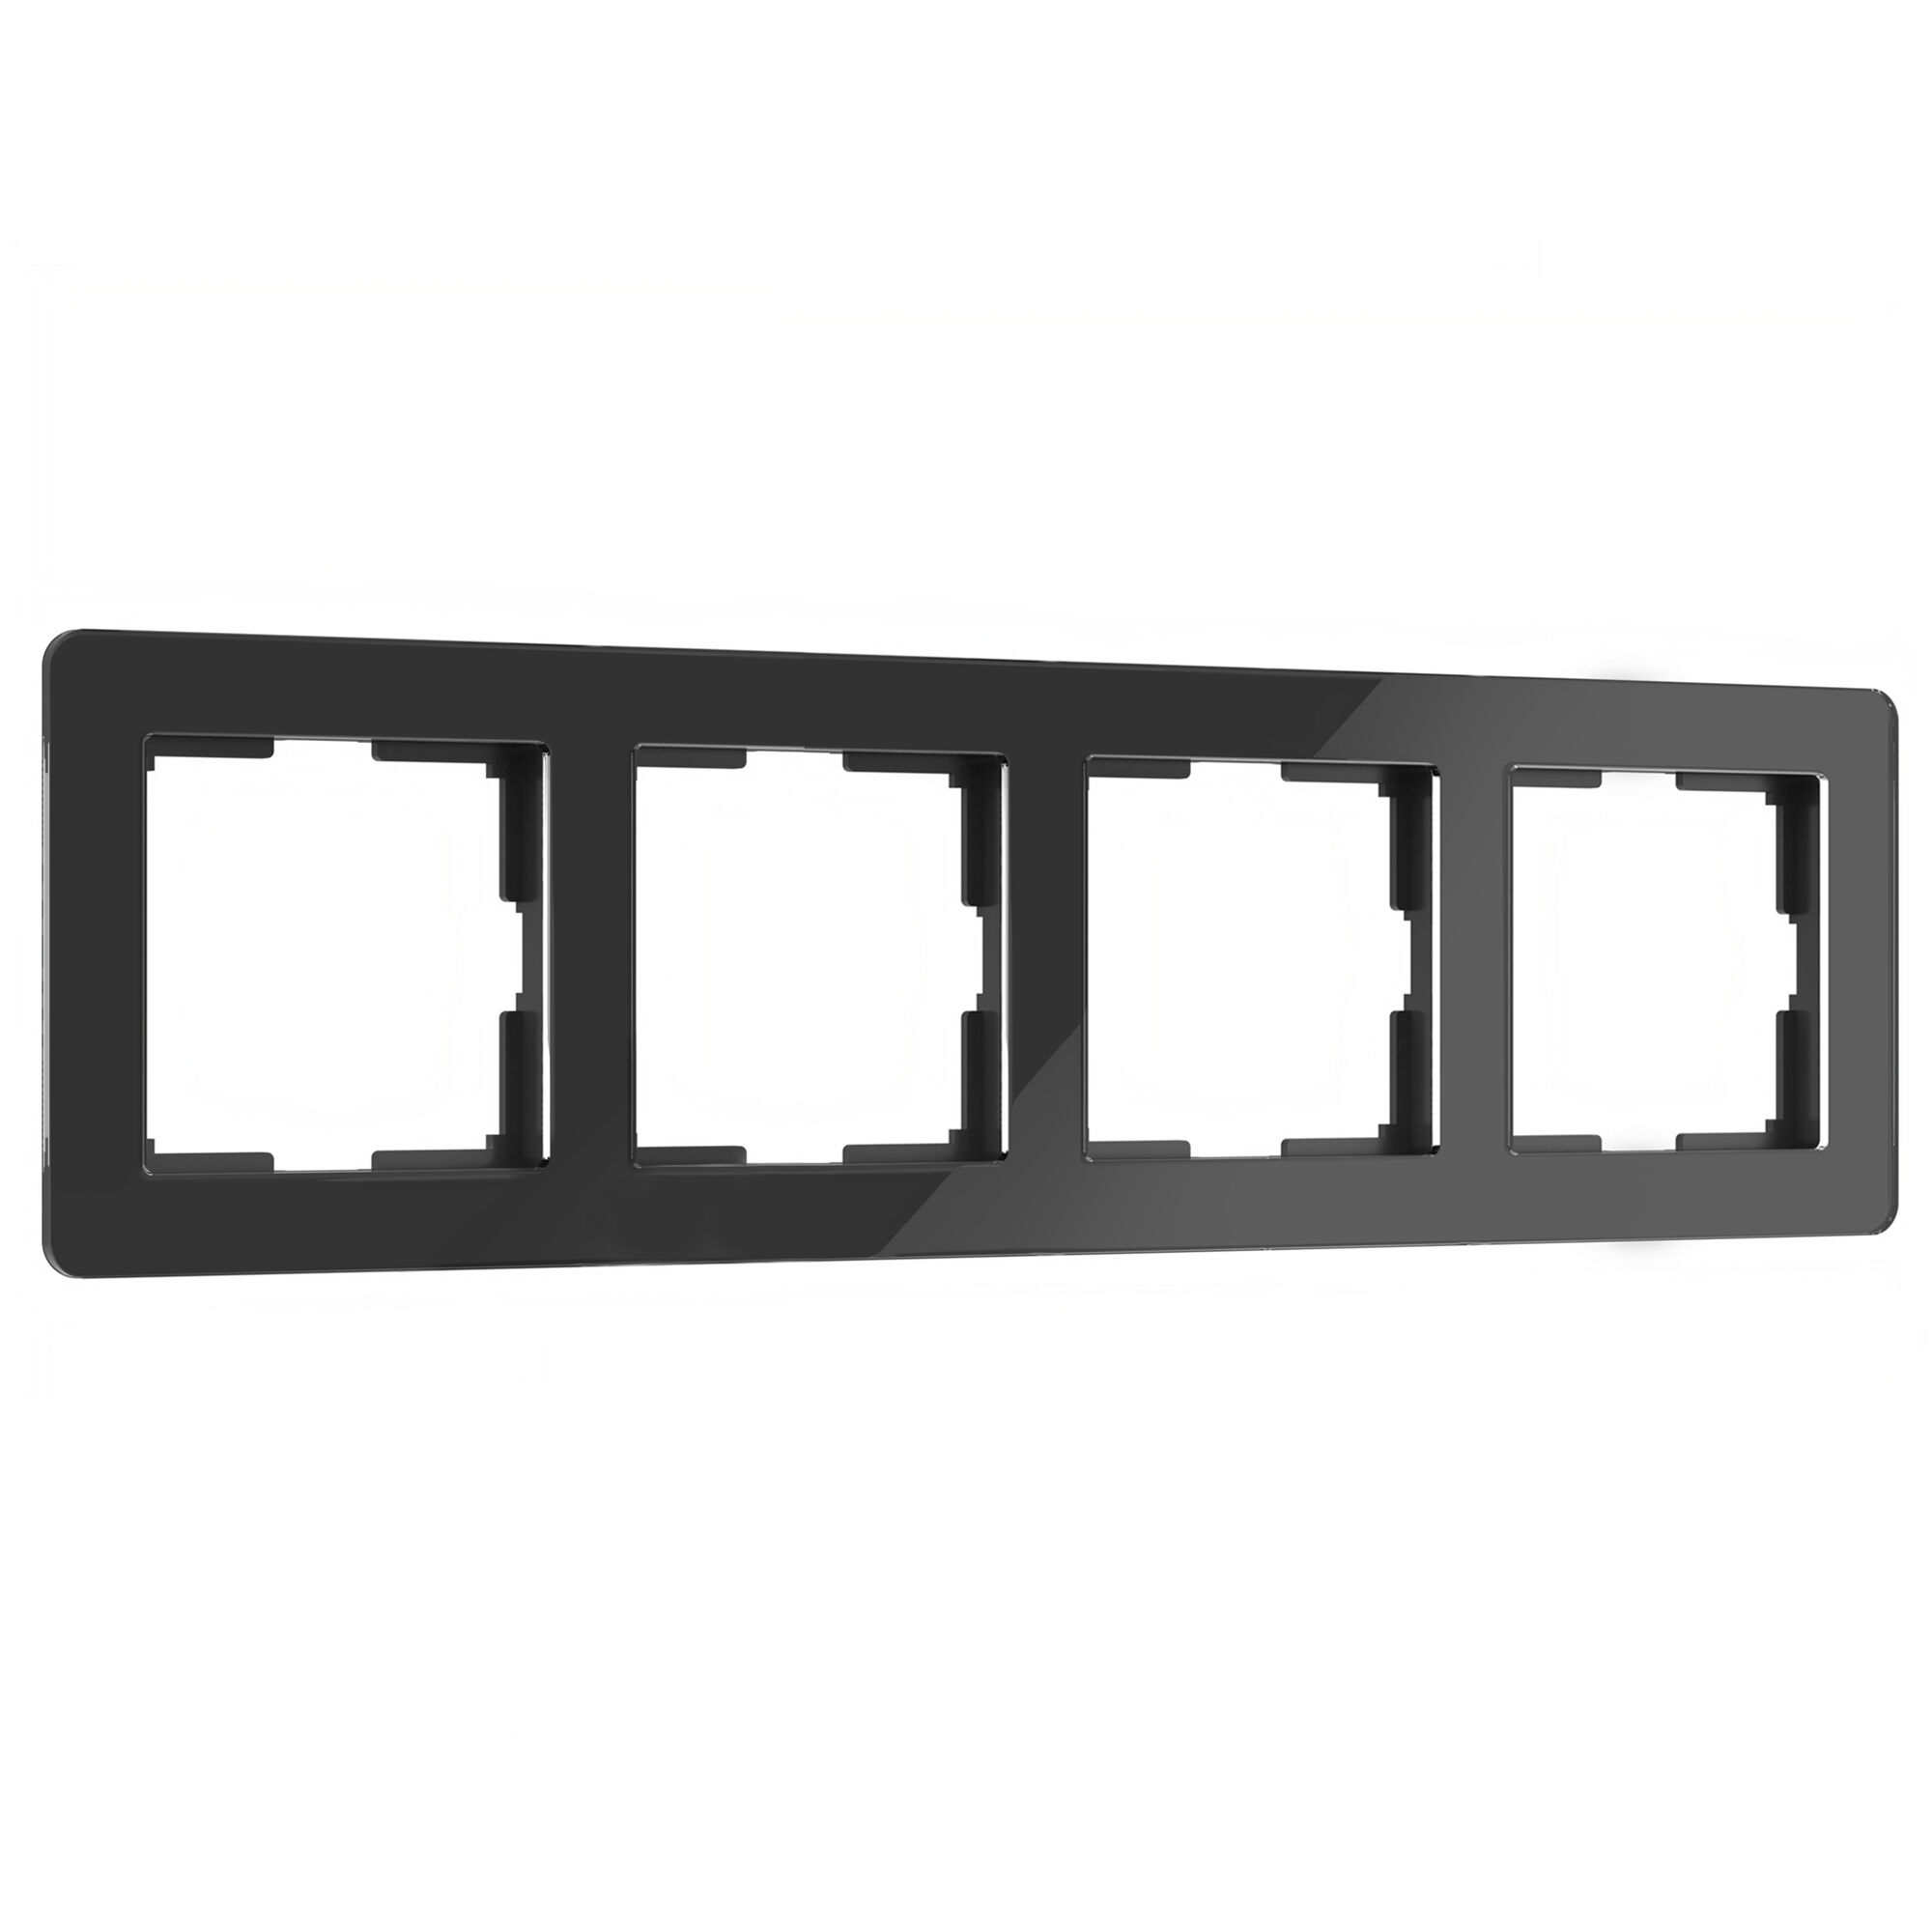 Рамка для розетки и выключателя на 4 поста Werkel Acrylic W0042708 черный из акрила рамка для розетки выключателя на 2 поста werkel acrylic w0022701 белый из акрила